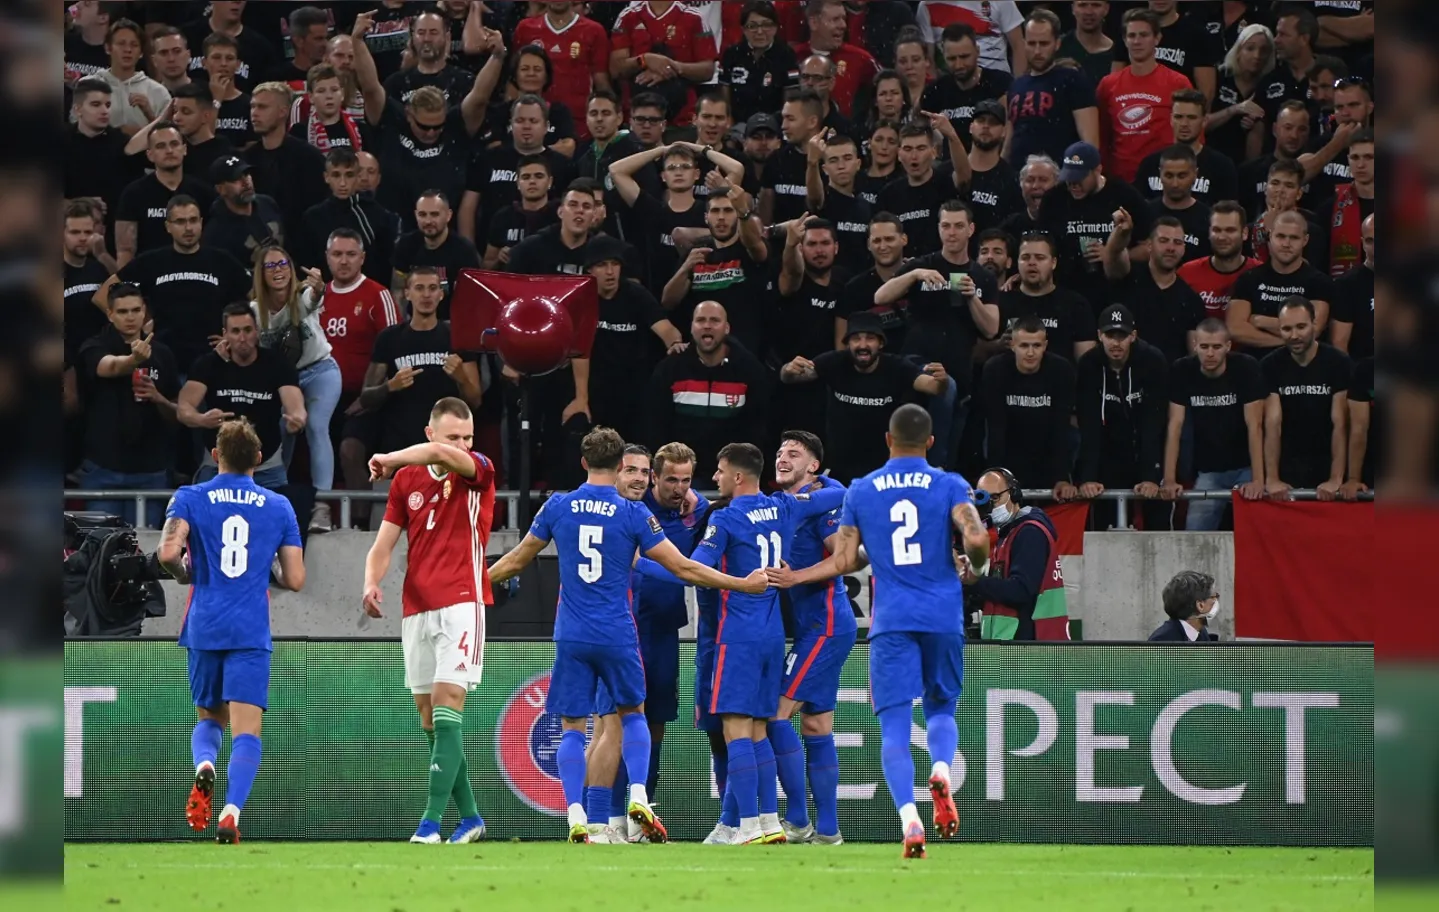 Os ingleses lideram invictos a chave com 12 pontos, cinco a mais que a segunda colocada Polônia | Foto: Attila Kisbenedek | AFP